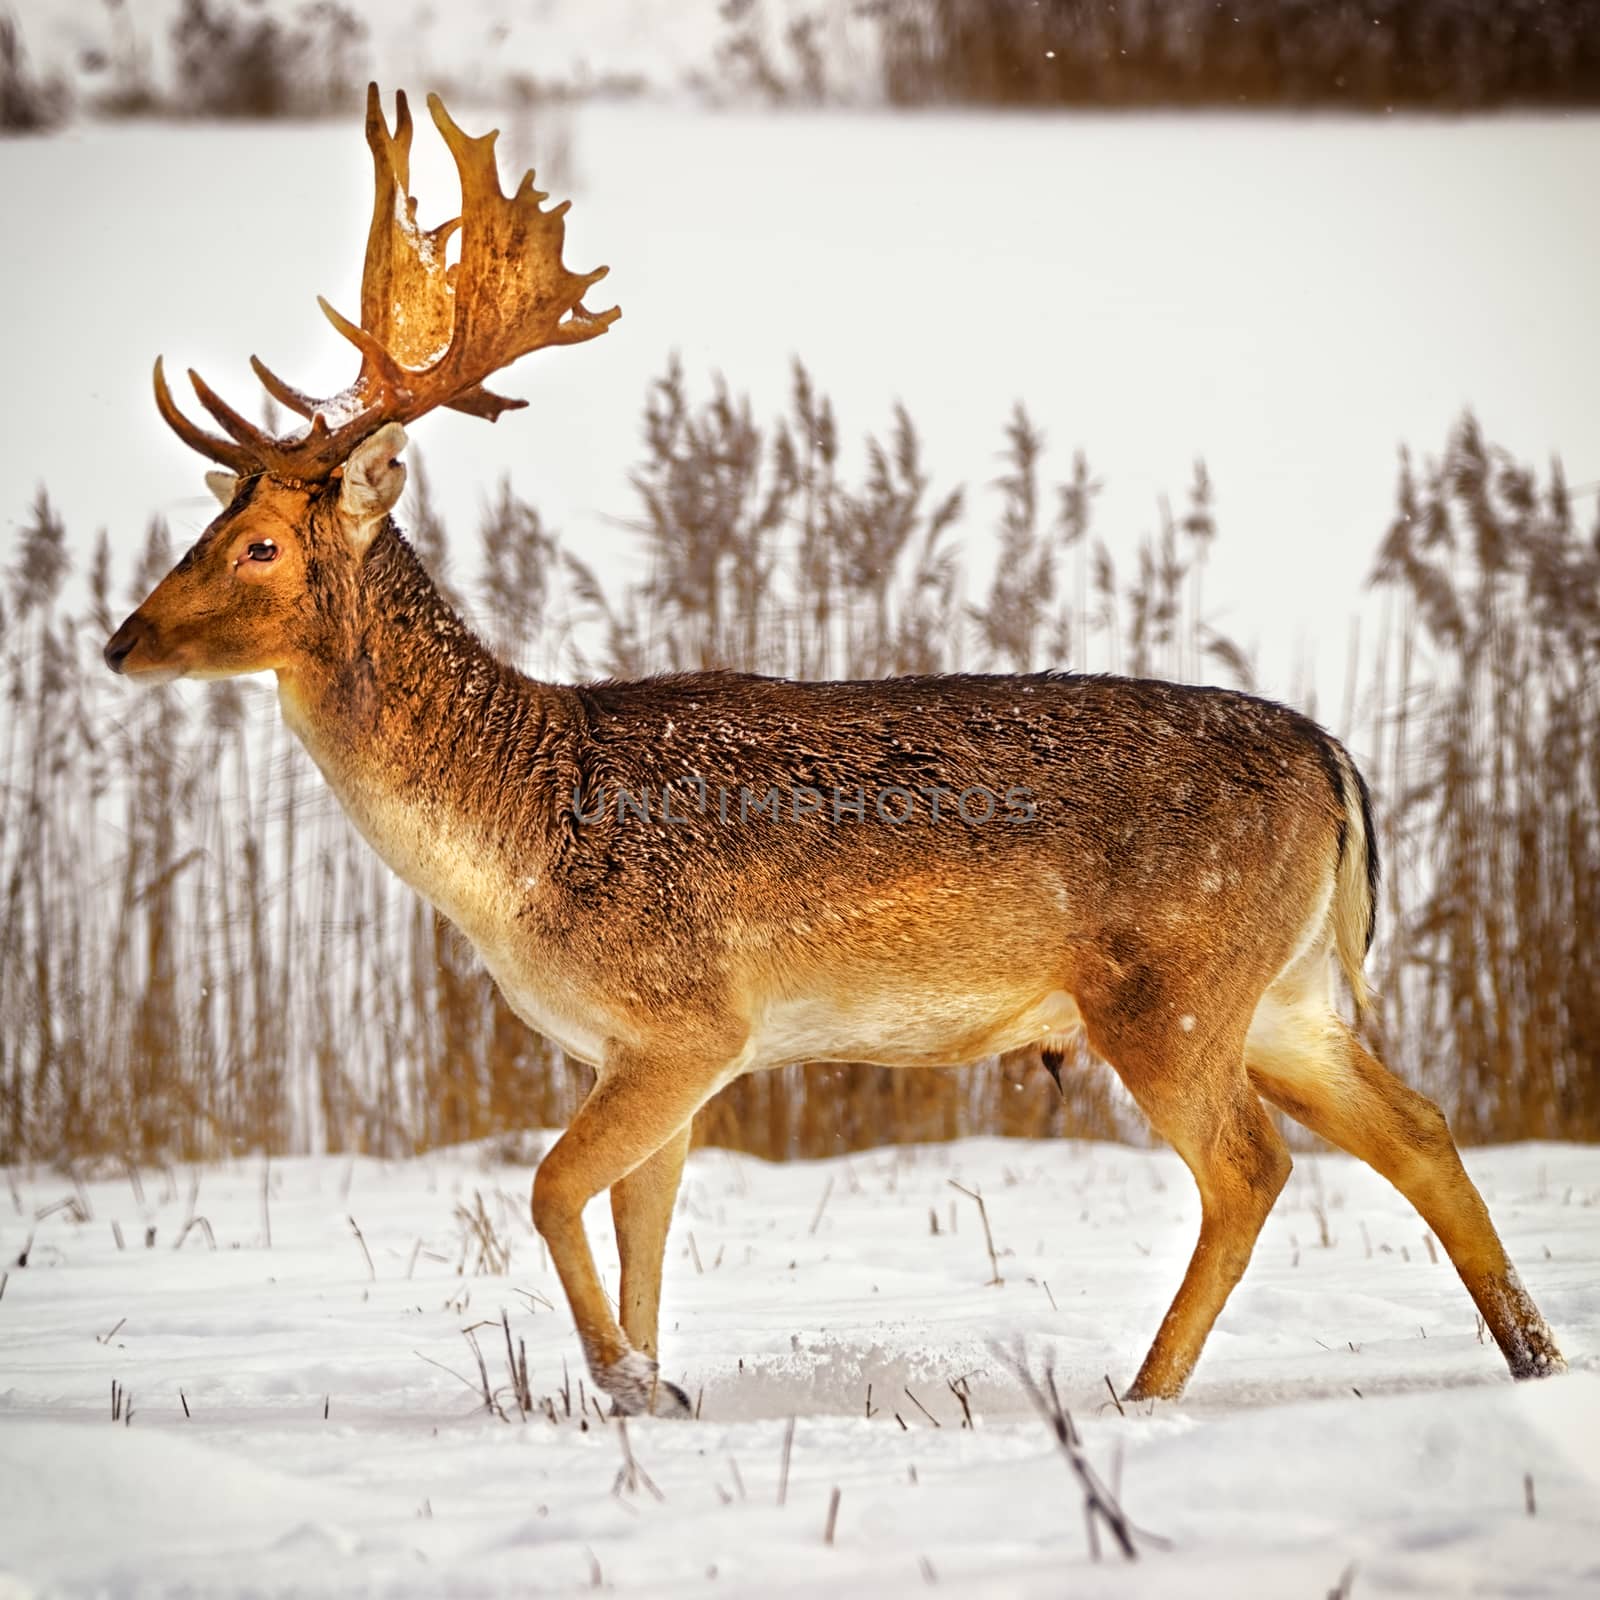 Fallow deer male in winter snow field